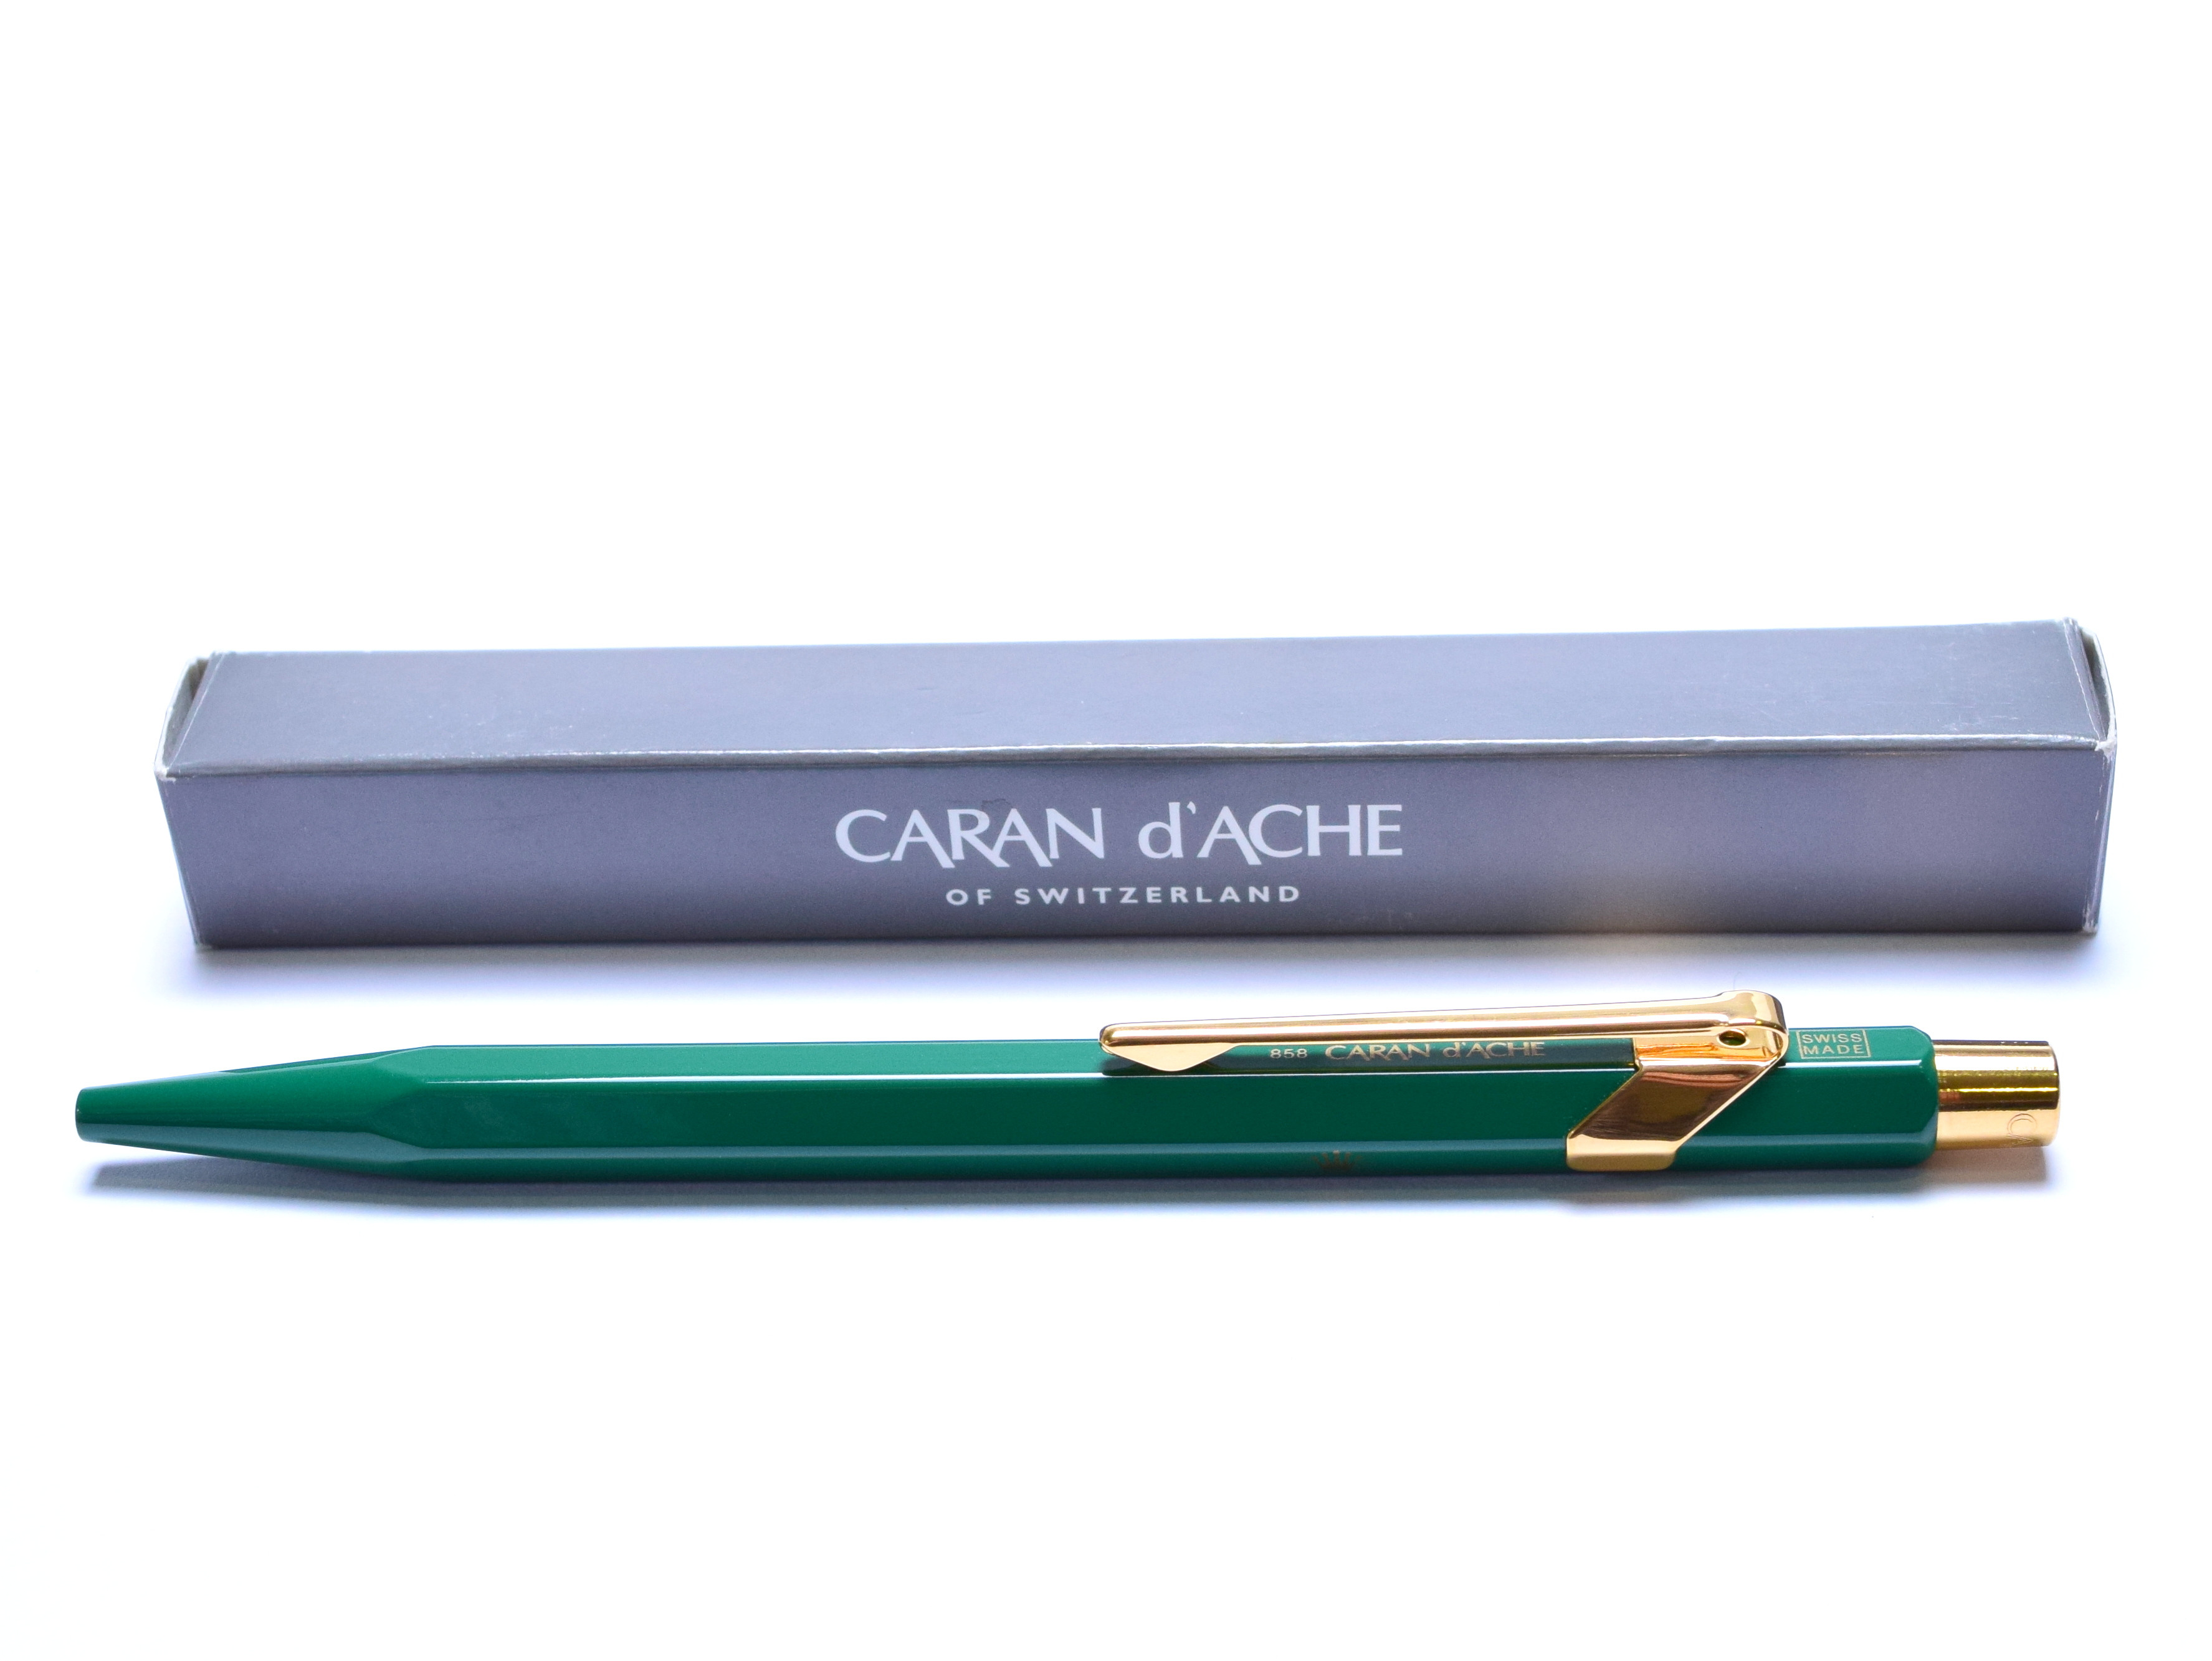 Caran d'Ache ballpoint pen ROLEX 2202 M not for sale Caran dAche Rolex novelty 